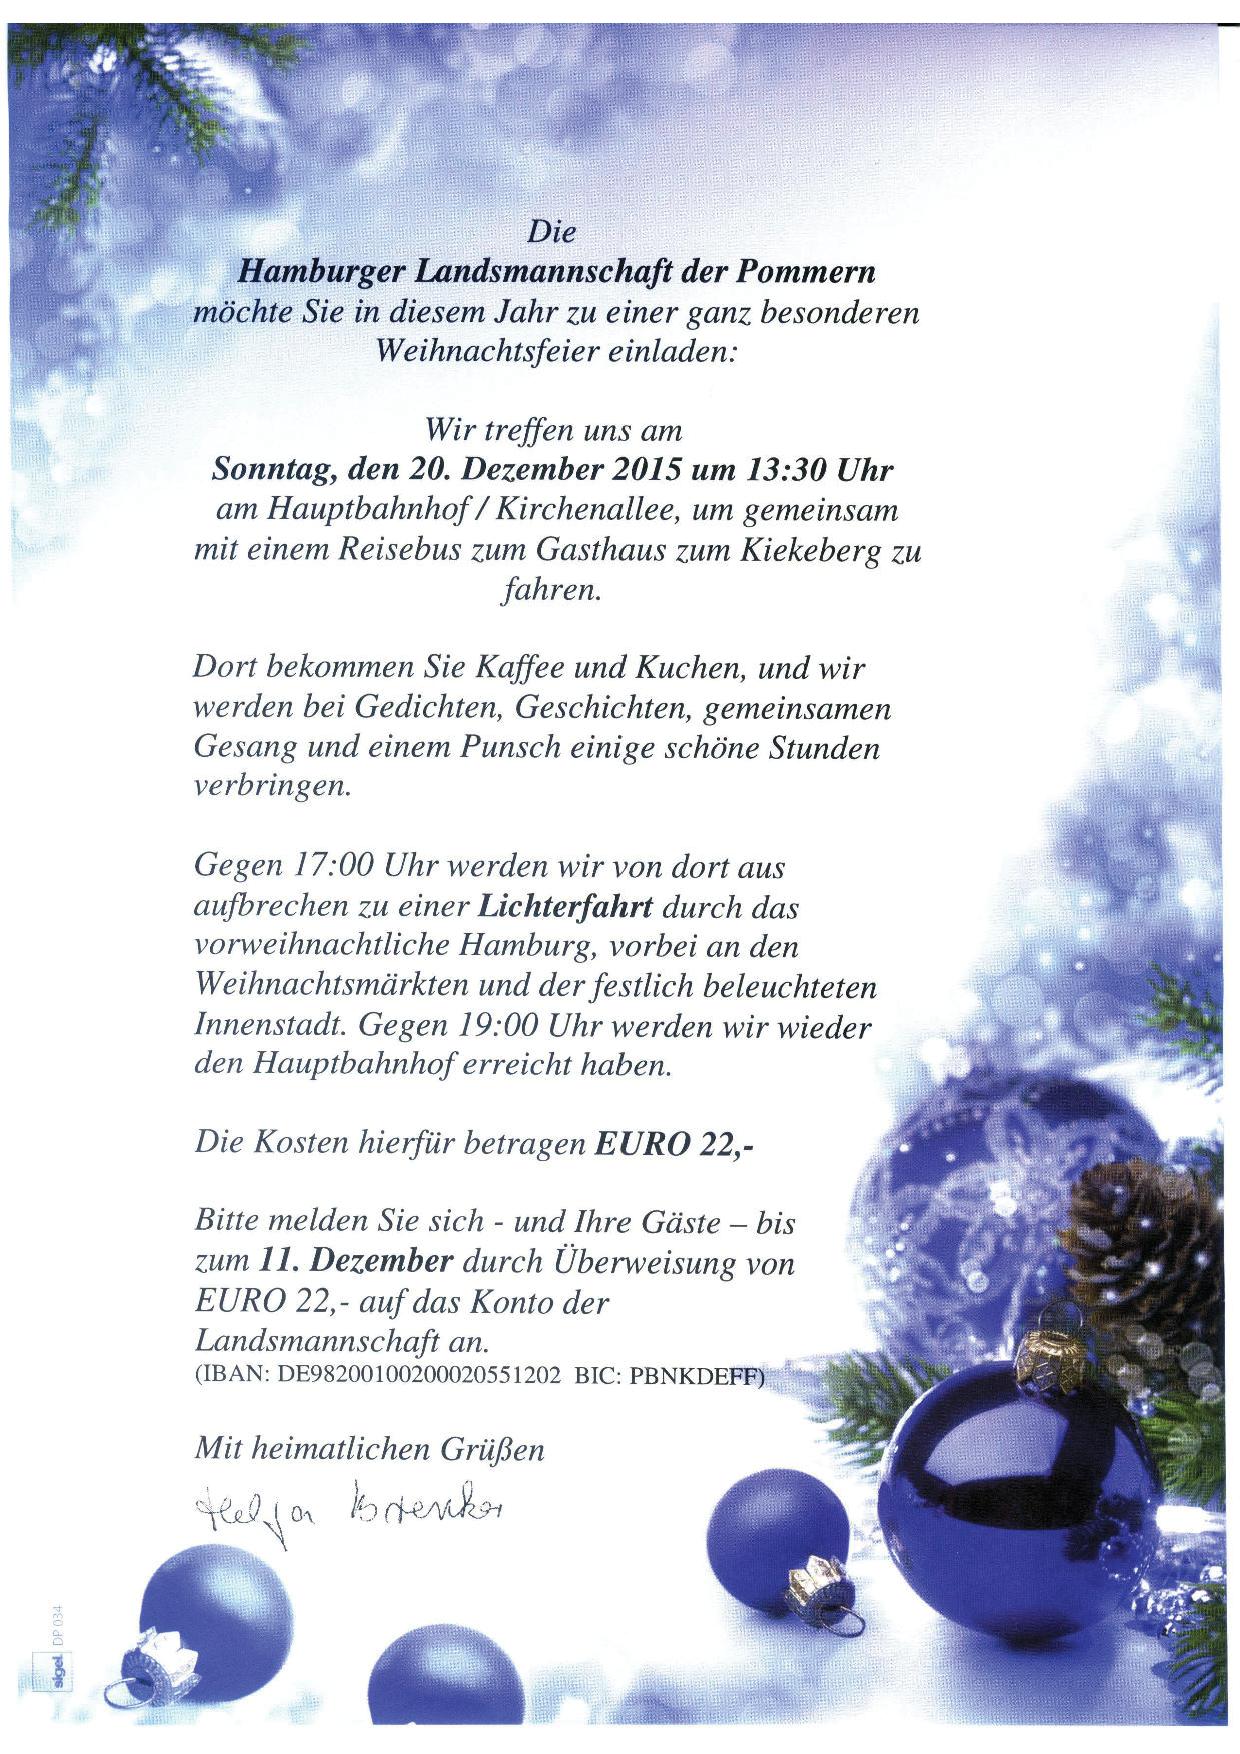 Einladung zur Weihnachtsfeier der PLM am 20.12.2015